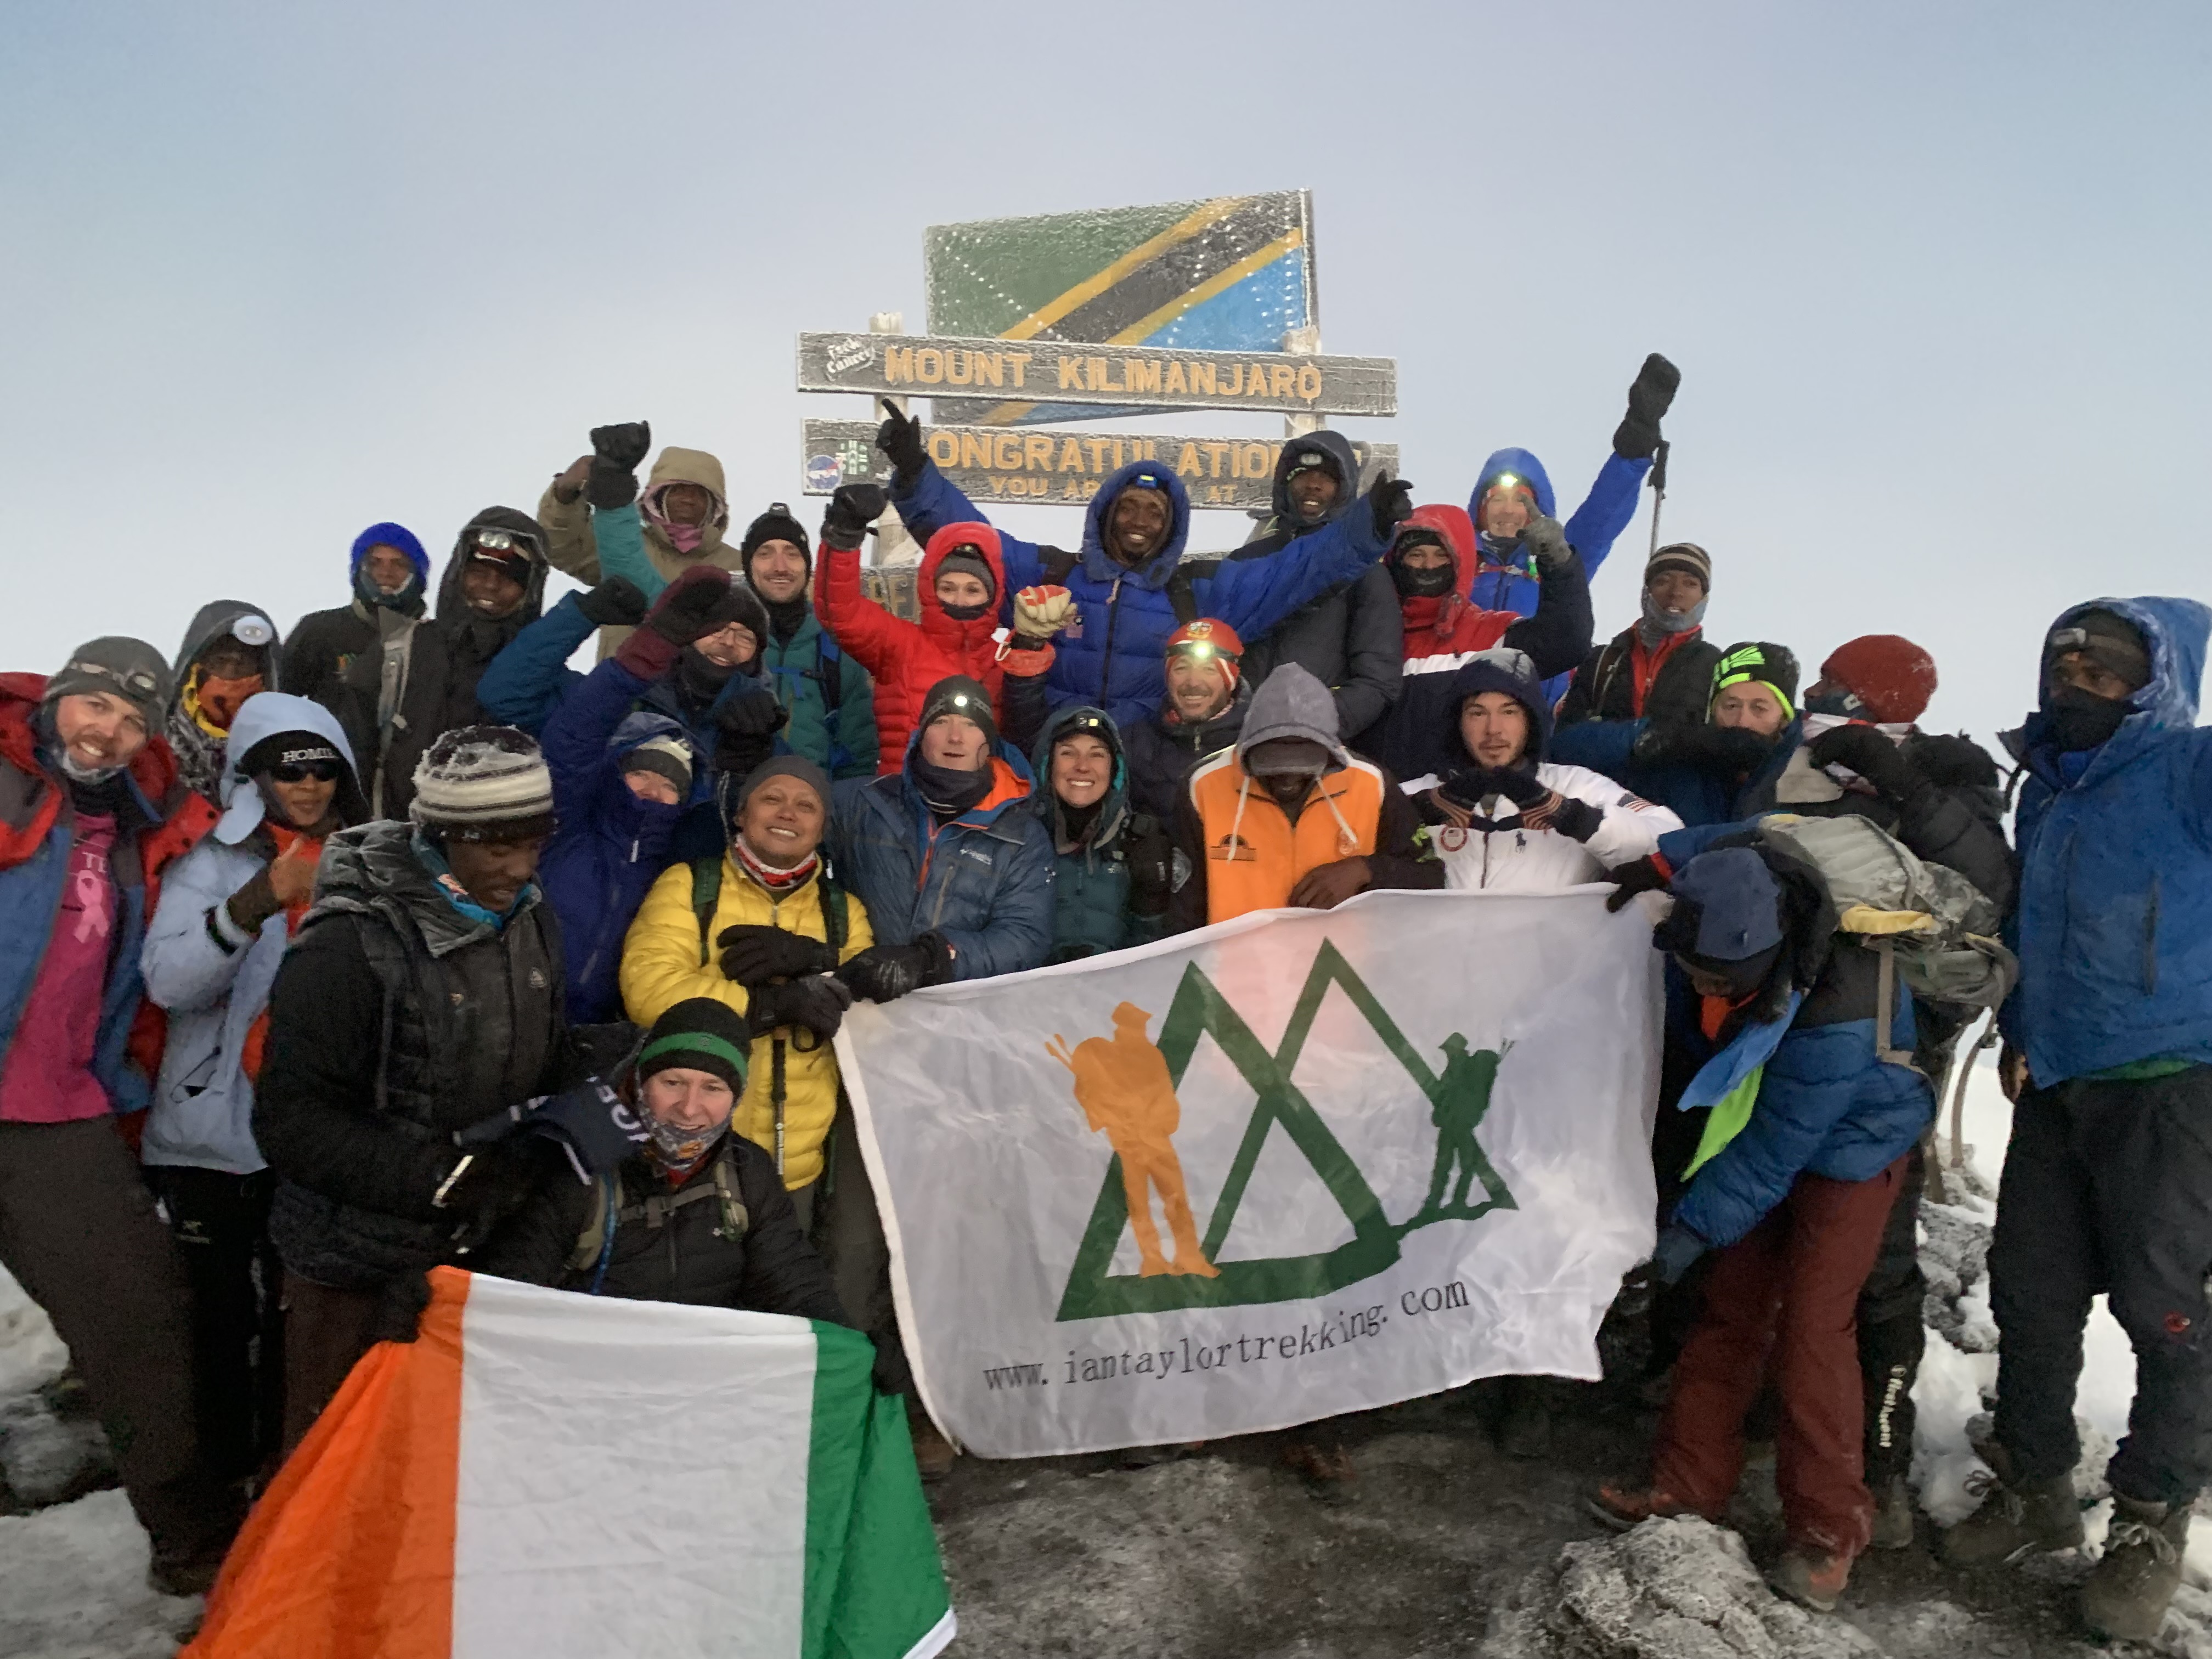 On the summit of Kilimanjaro 